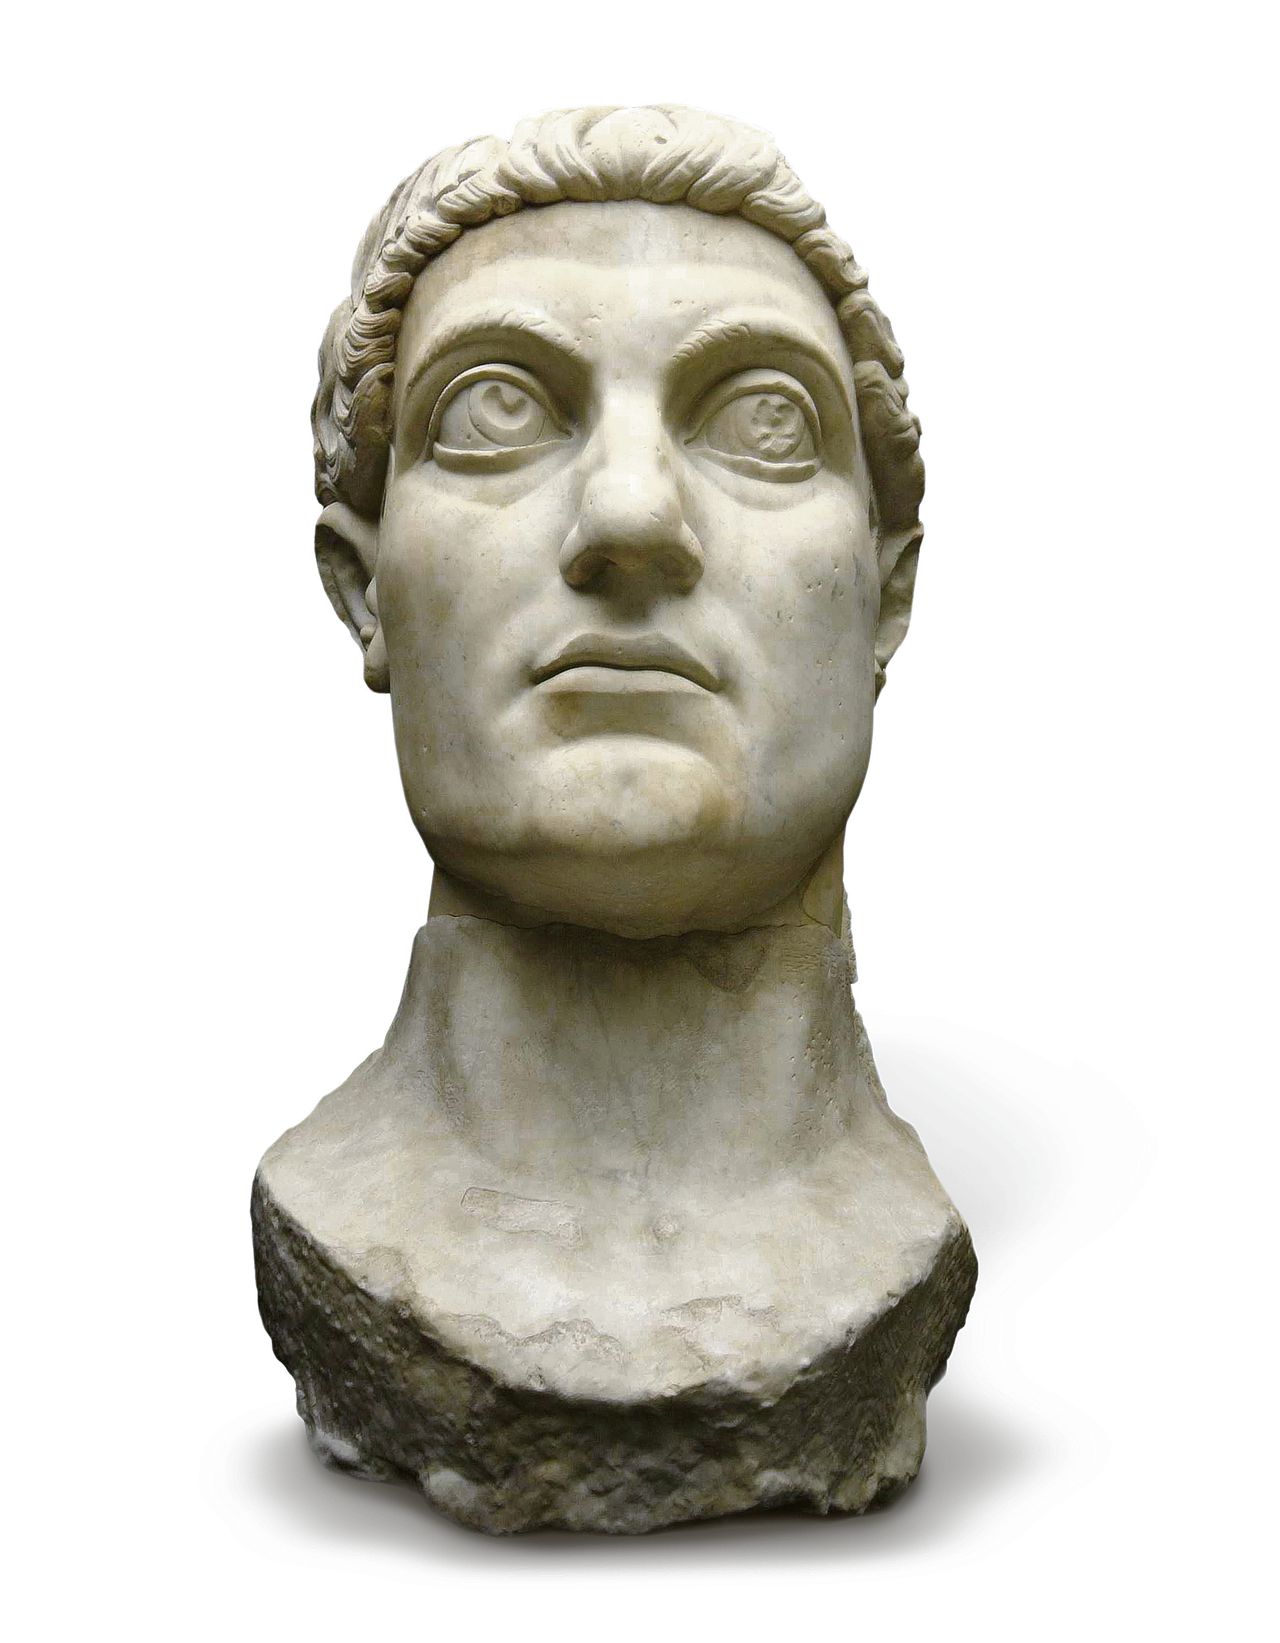 Kopie van een kolossaal marmeren beeld van het hoofd van keizer Constantijn. Het origineel dateert uit 312-15, de kopie uit 2005. De hoogte van het beeld is 2,97 meter.